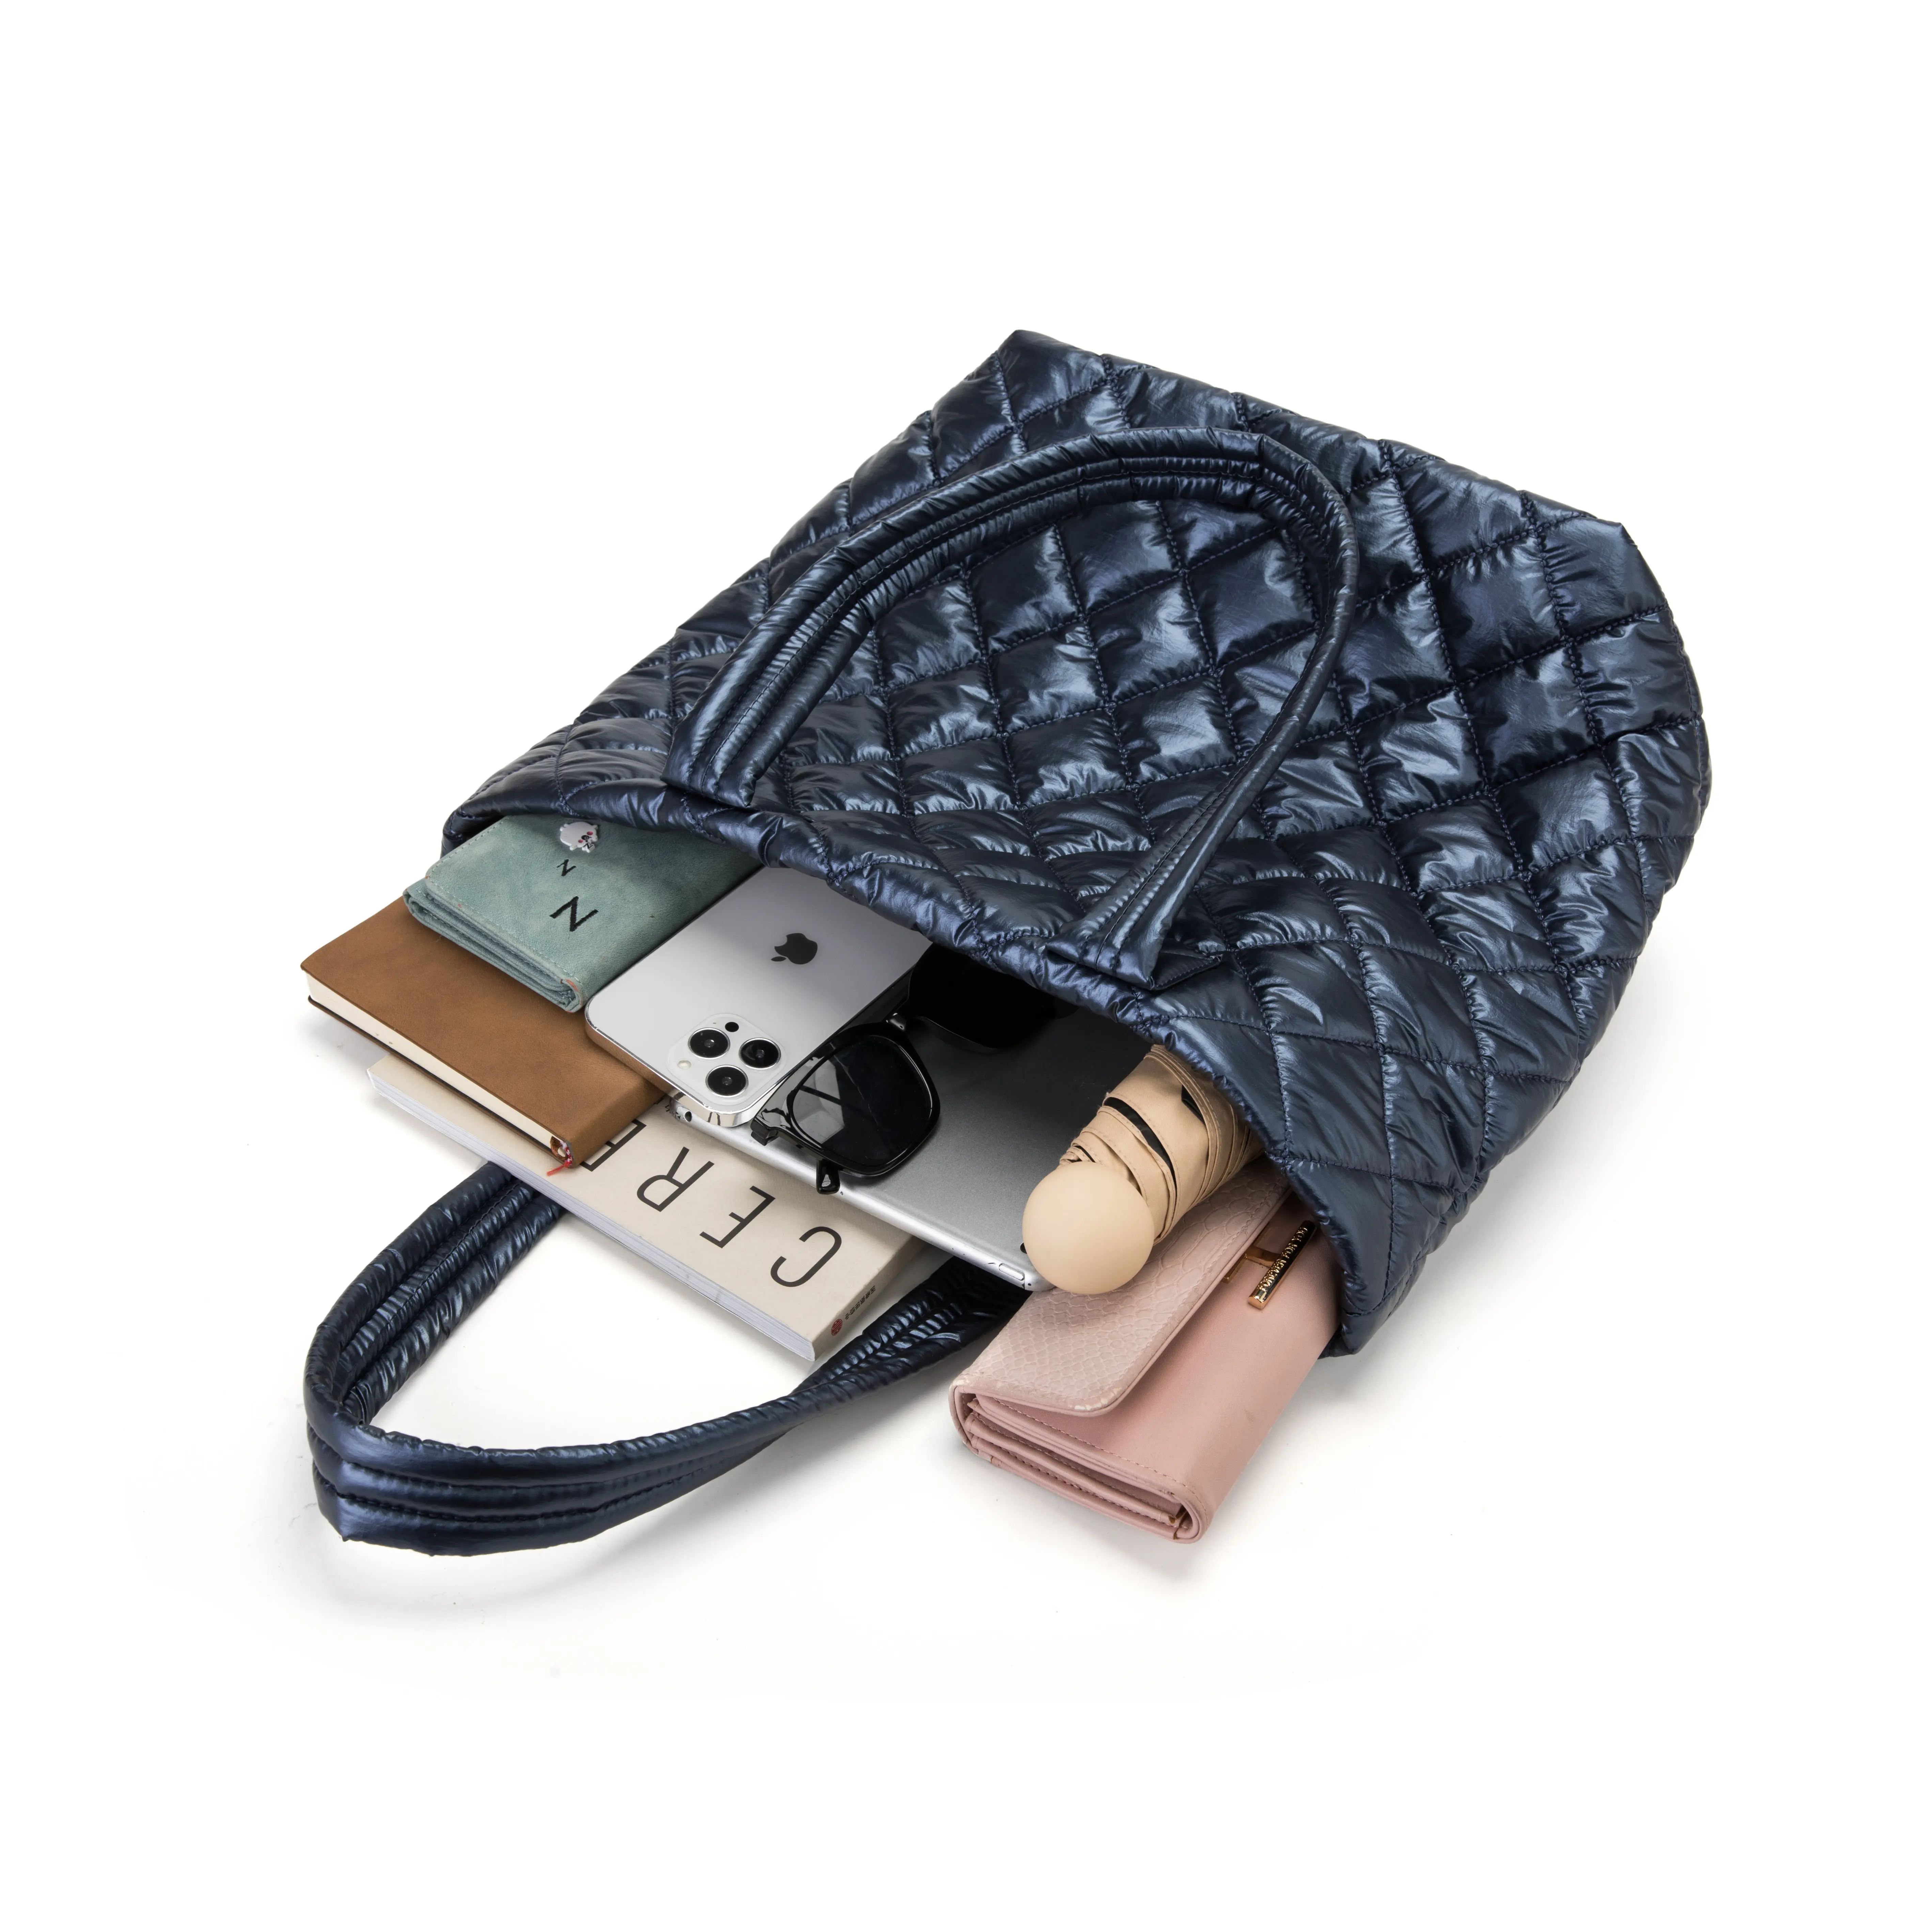 Individuelle Luxus-Lederhandtasche für Damen Damen-Totausche stilvolle hochwertige echte Carteras/Bols muj por mayor Arbeitstaschen